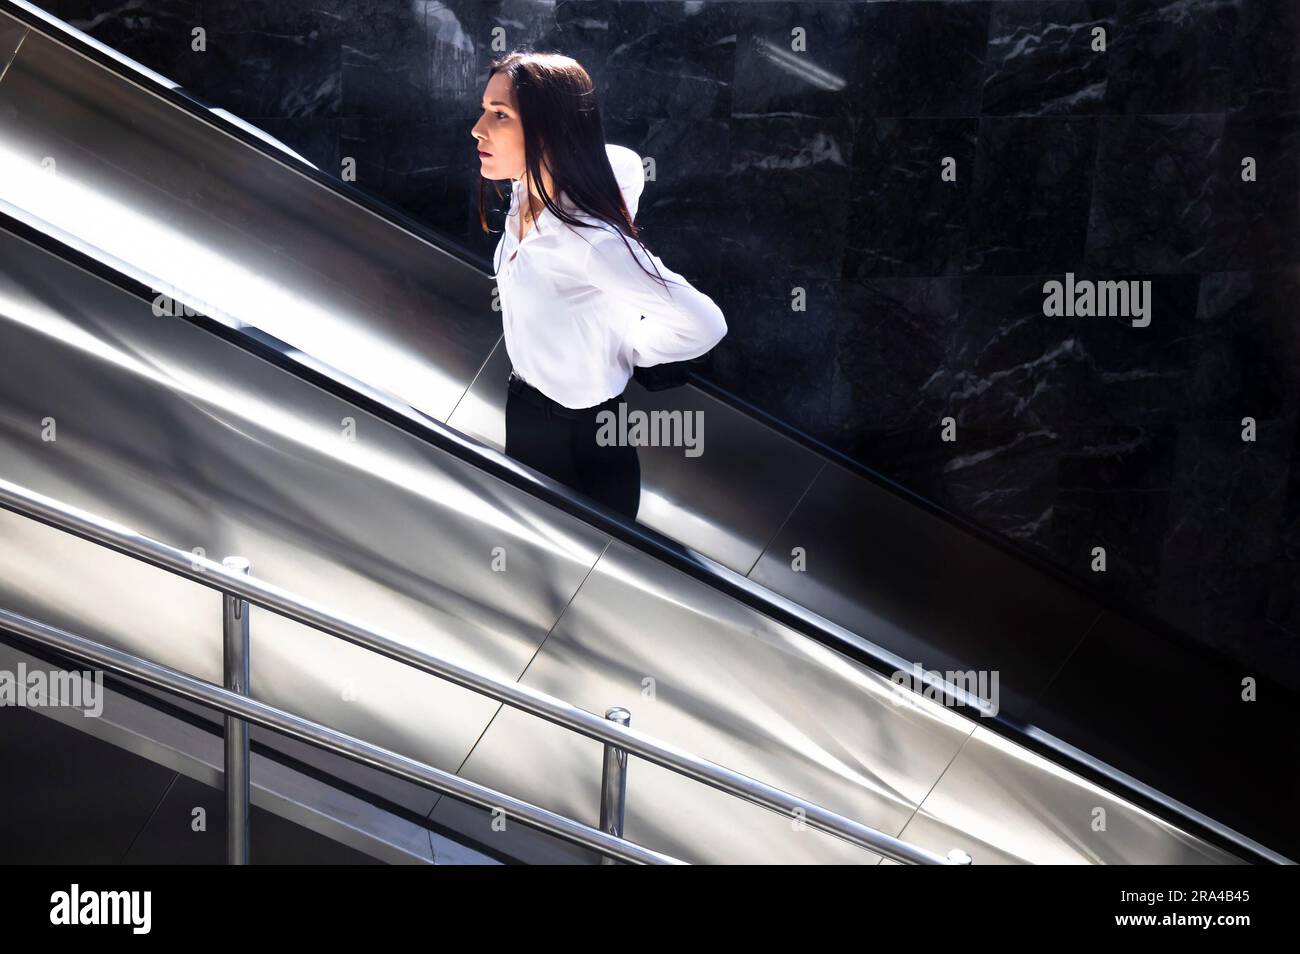 Belgrado, Serbia - 15 giugno 2022: Giovane donna con camicia bianca e pantaloni neri che sale sulla scala mobile della metropolitana, in una giornata di sole Foto Stock